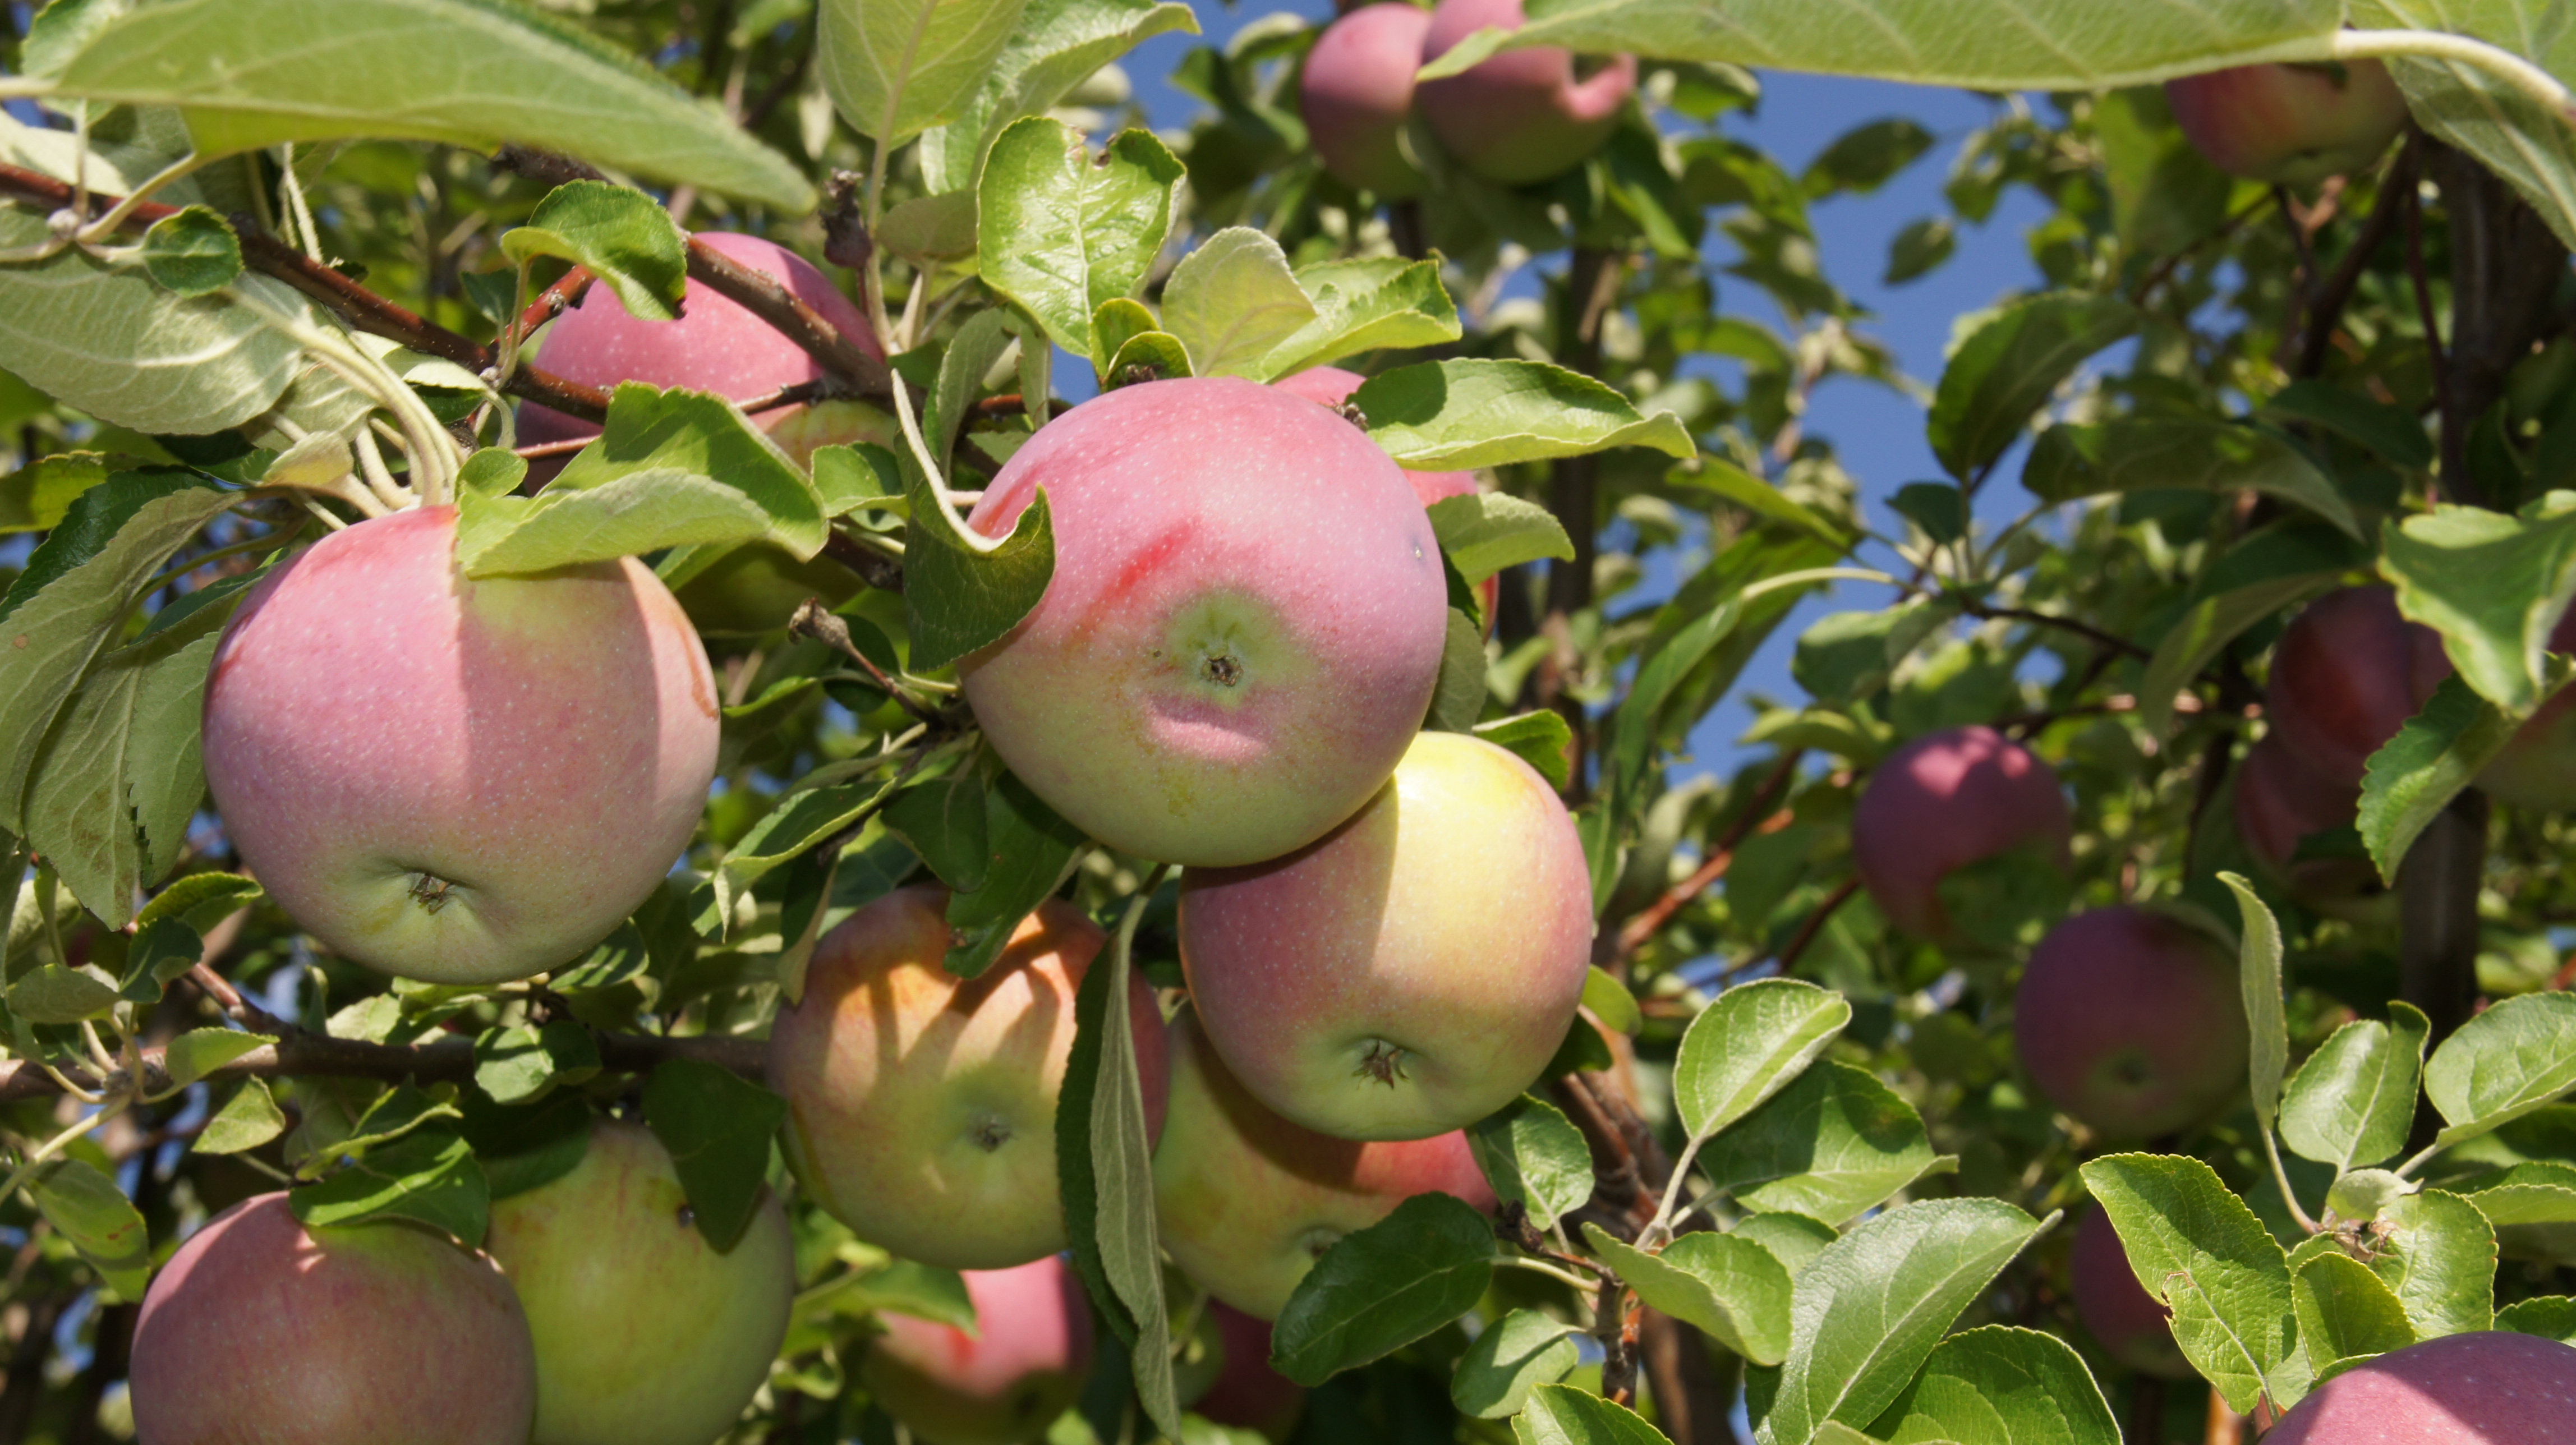 Сорт яблони беркутовское фото и описание сорта фото